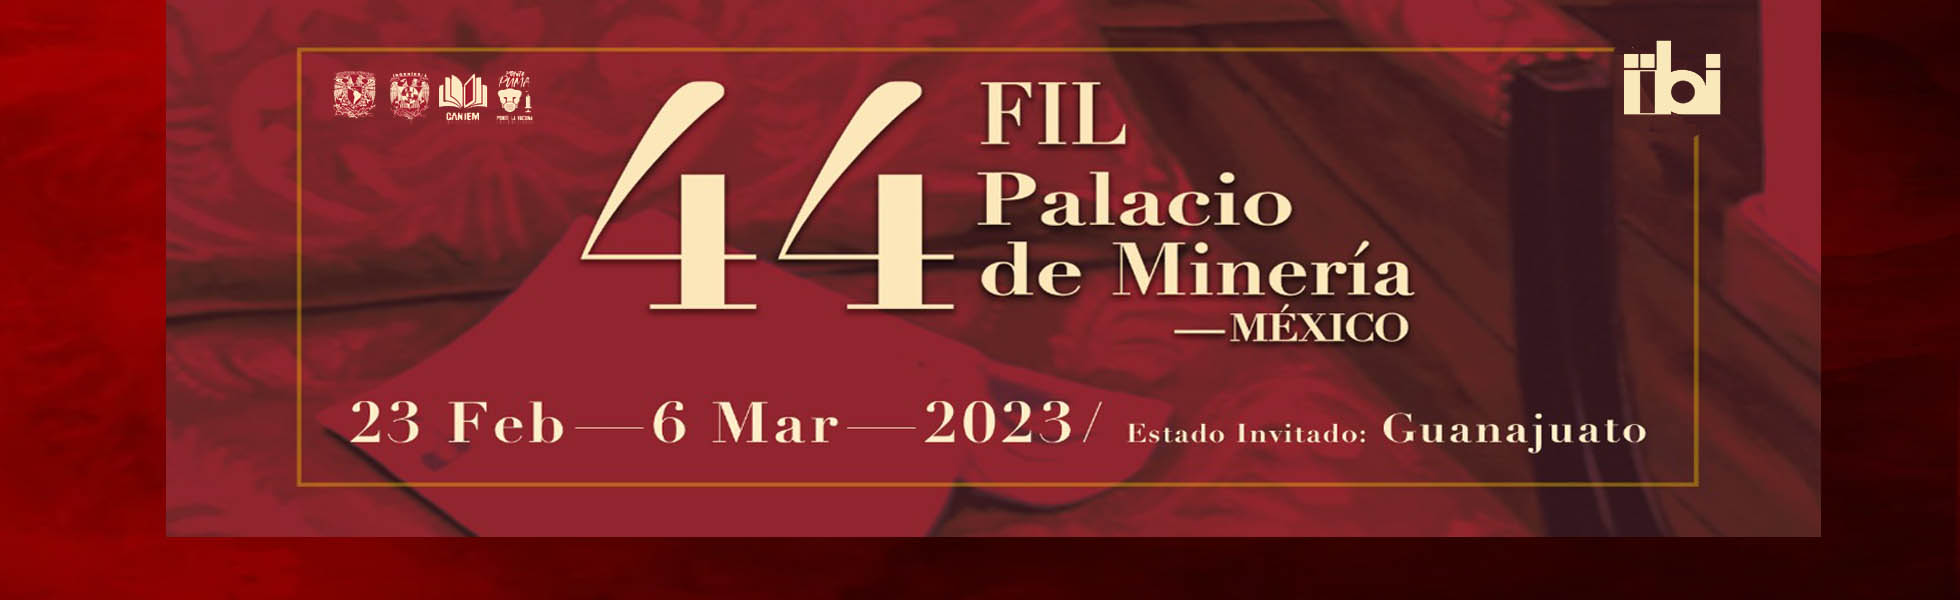 Presentación de libros IIBI en la 44 FIL Palacio de Minería